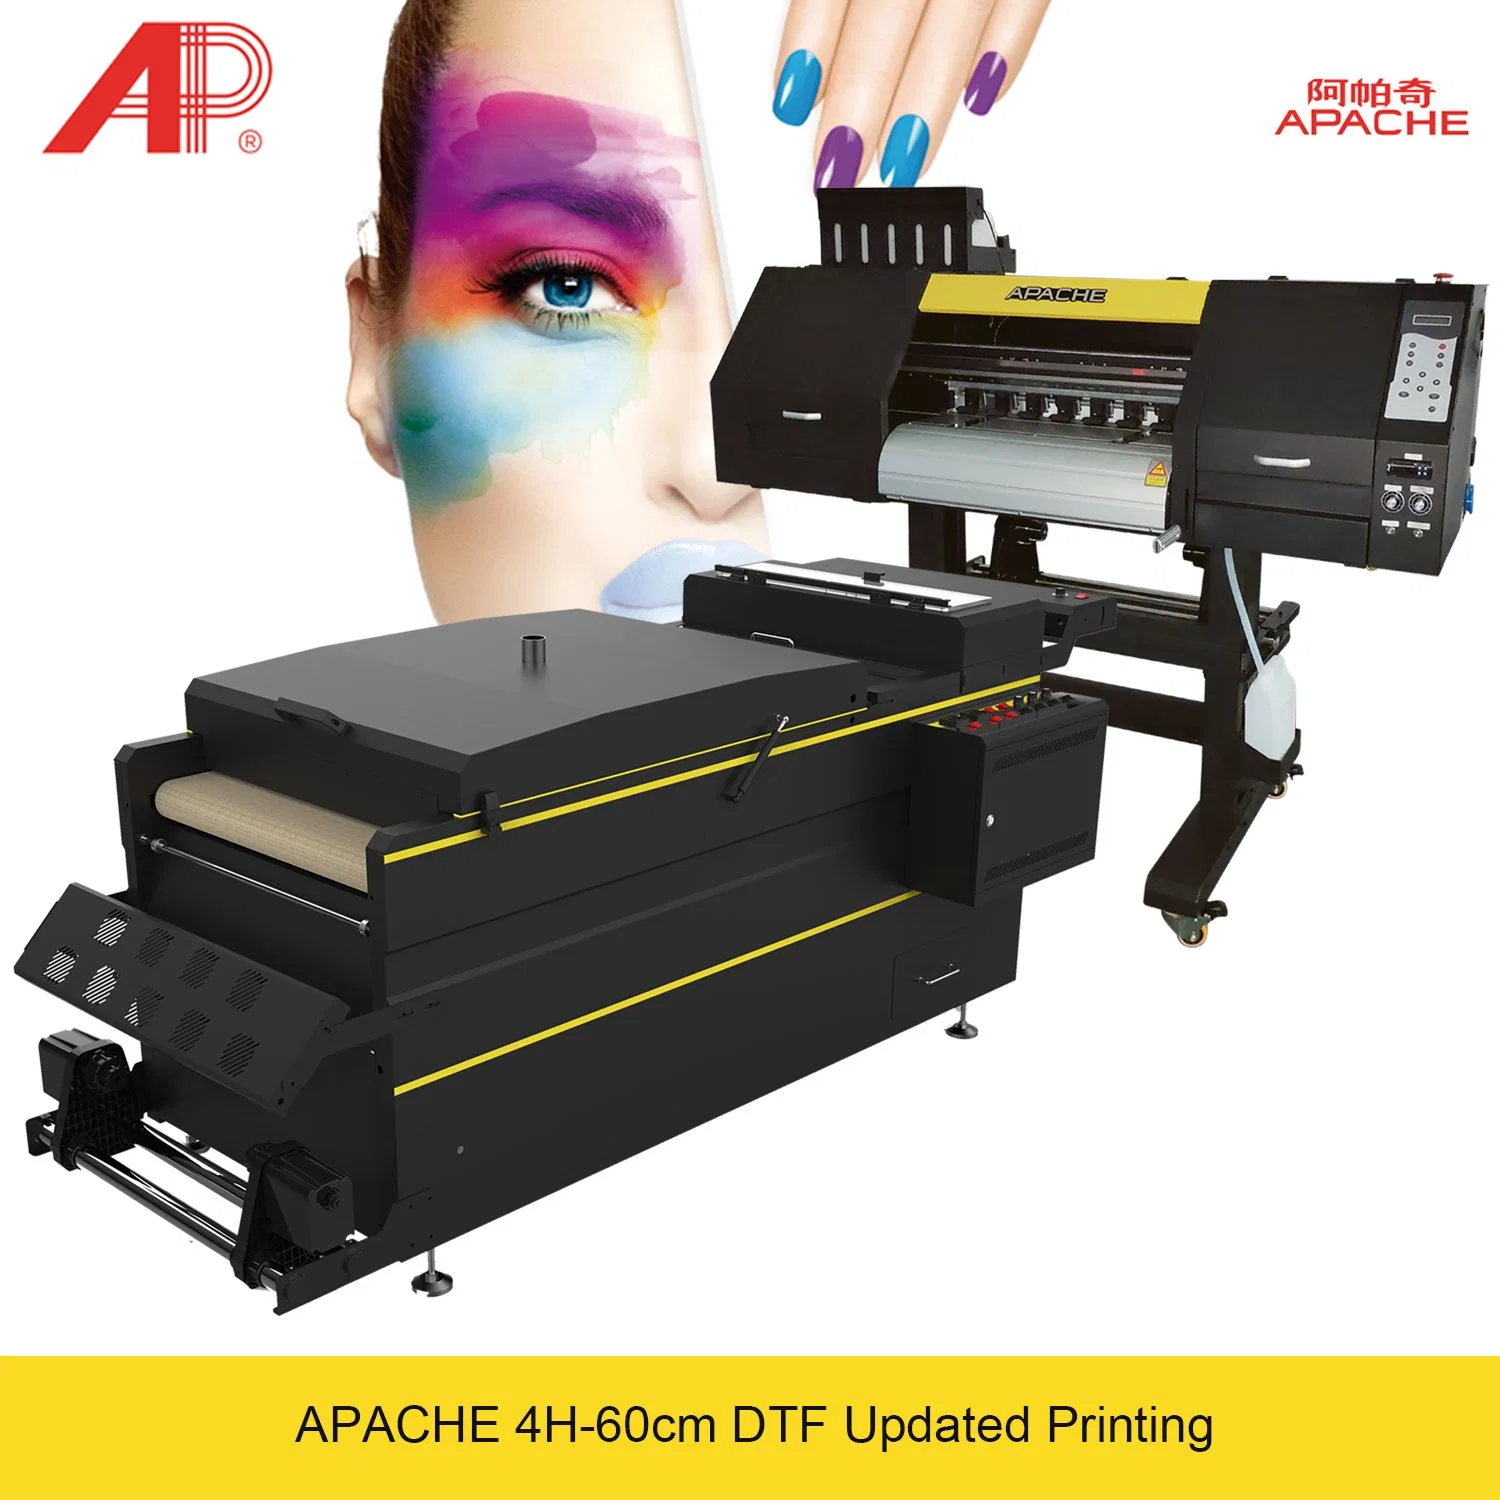 O Apache Epson A1 I3200 Cabeçotes de Impressão Digital de Transferência de Calor de tereftalato de polietileno Dtf máquina de impressão para T-shirt